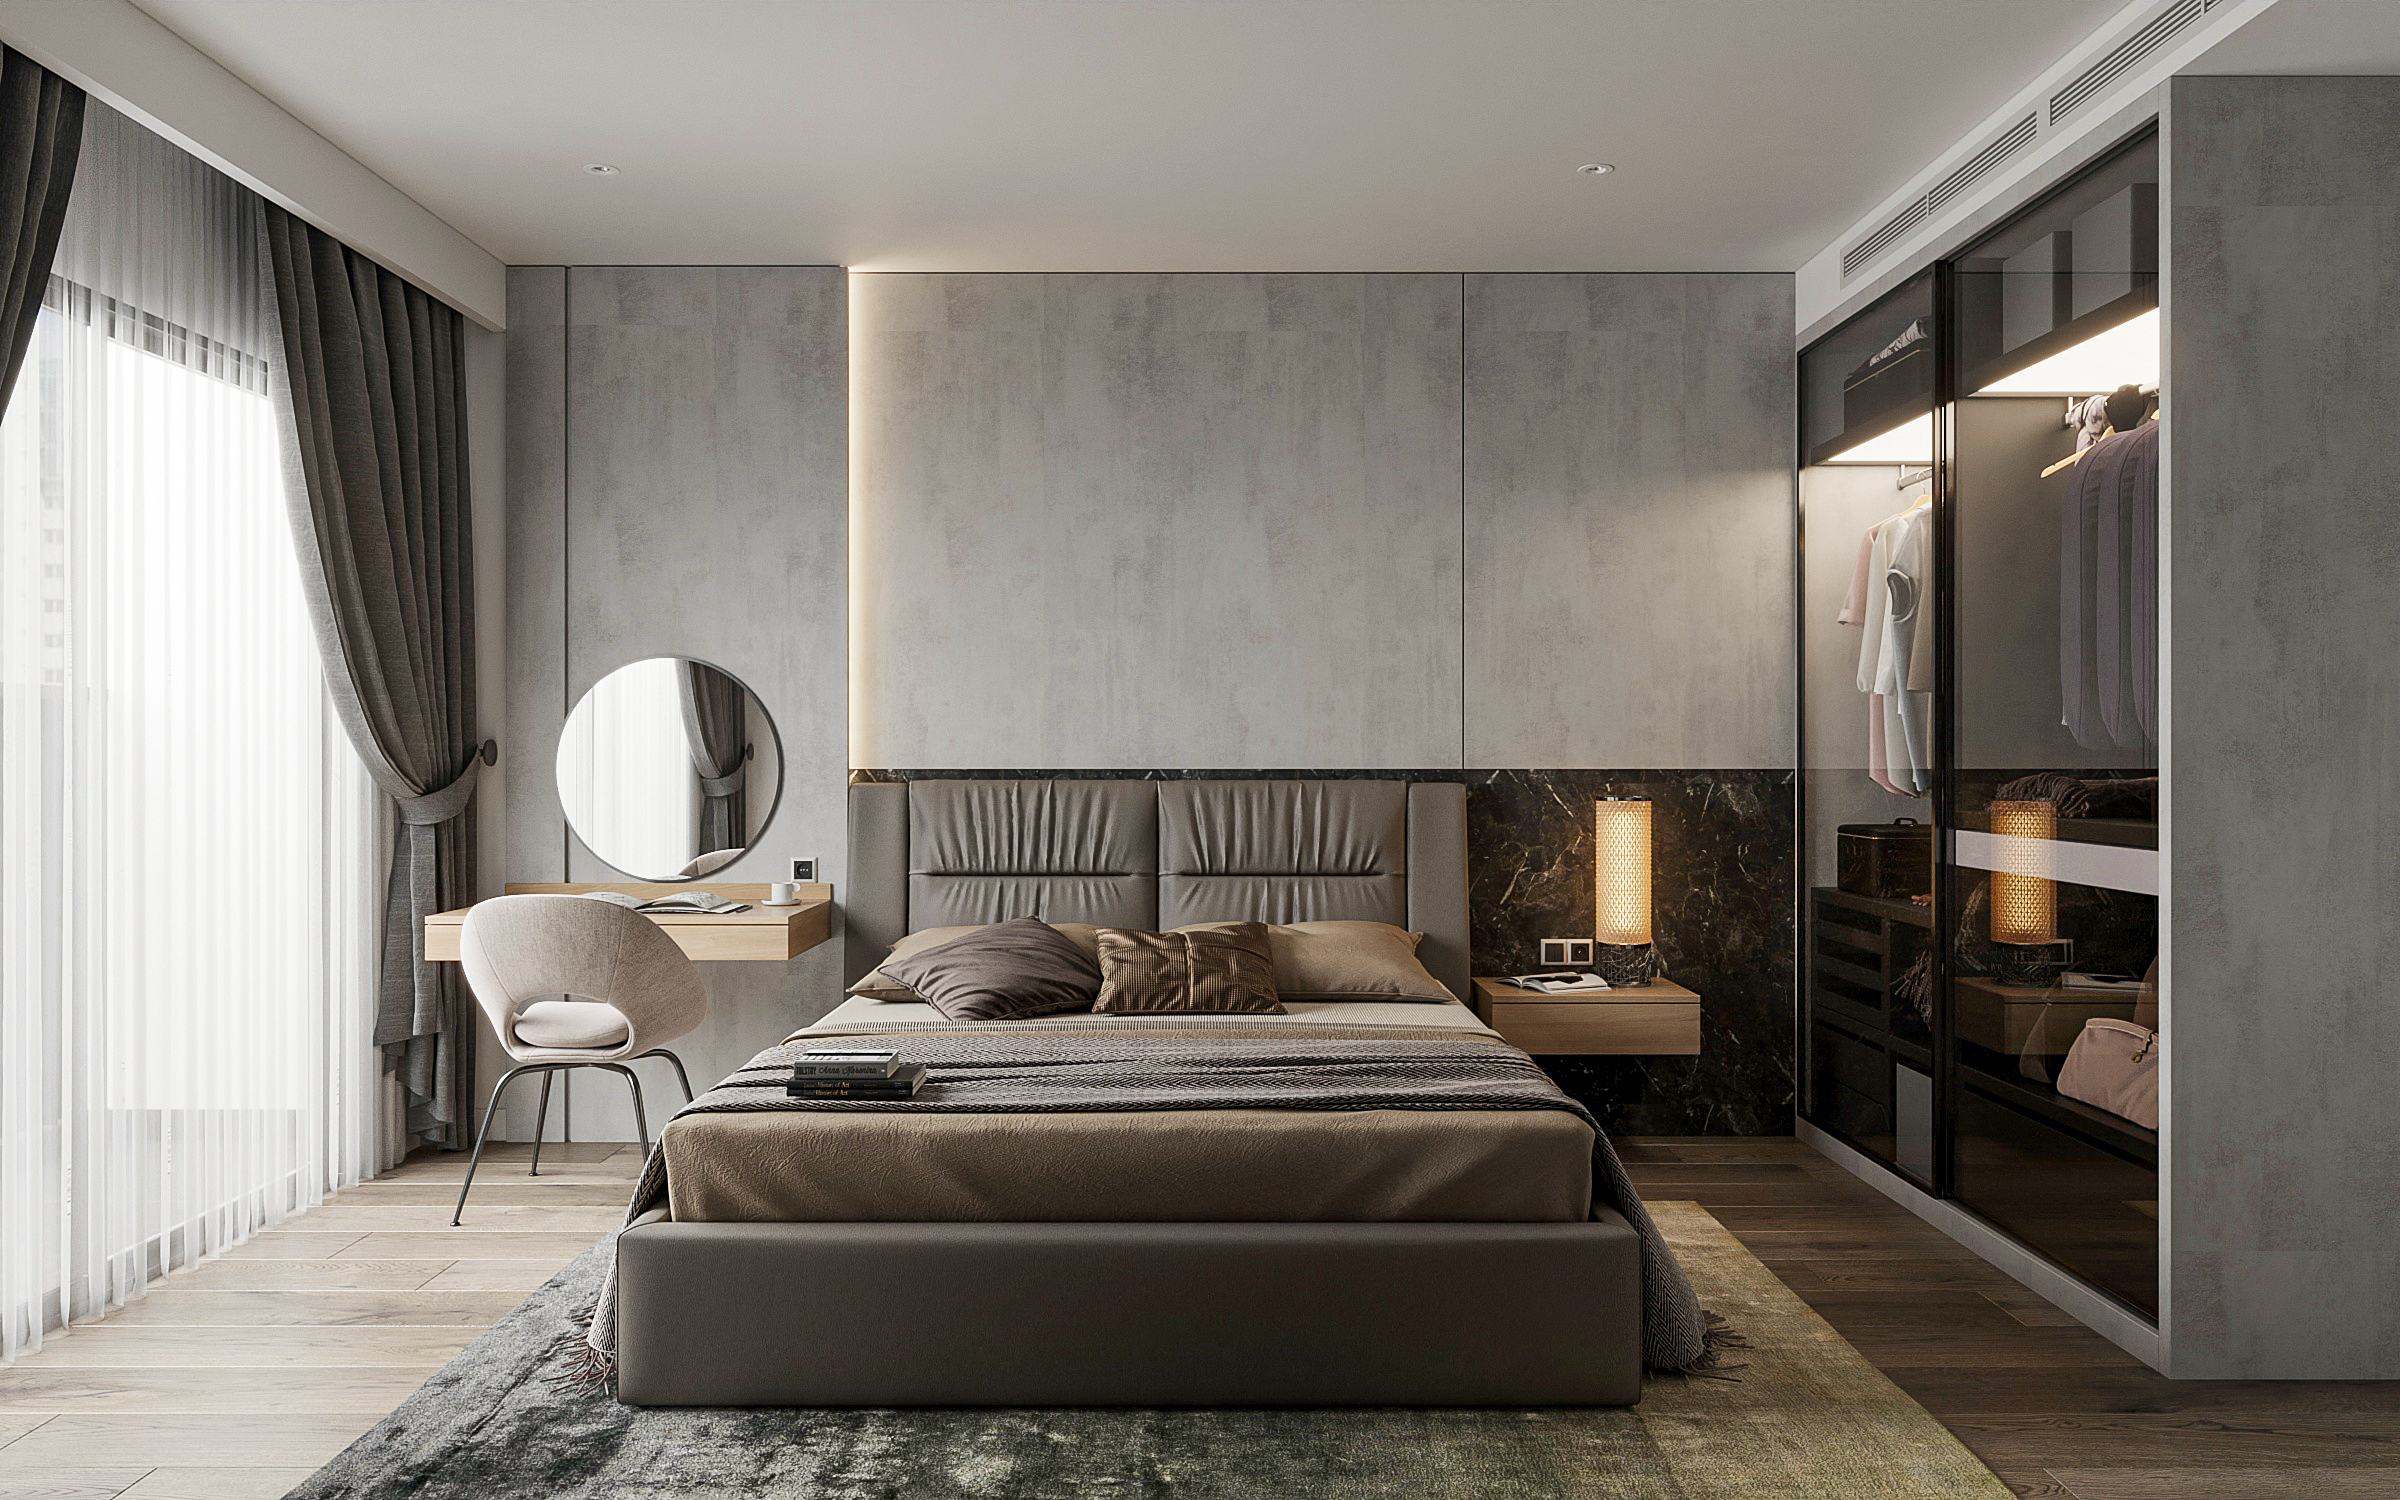 Phòng ngủ master thiết kế tinh tế, tối giản và sang trọng.